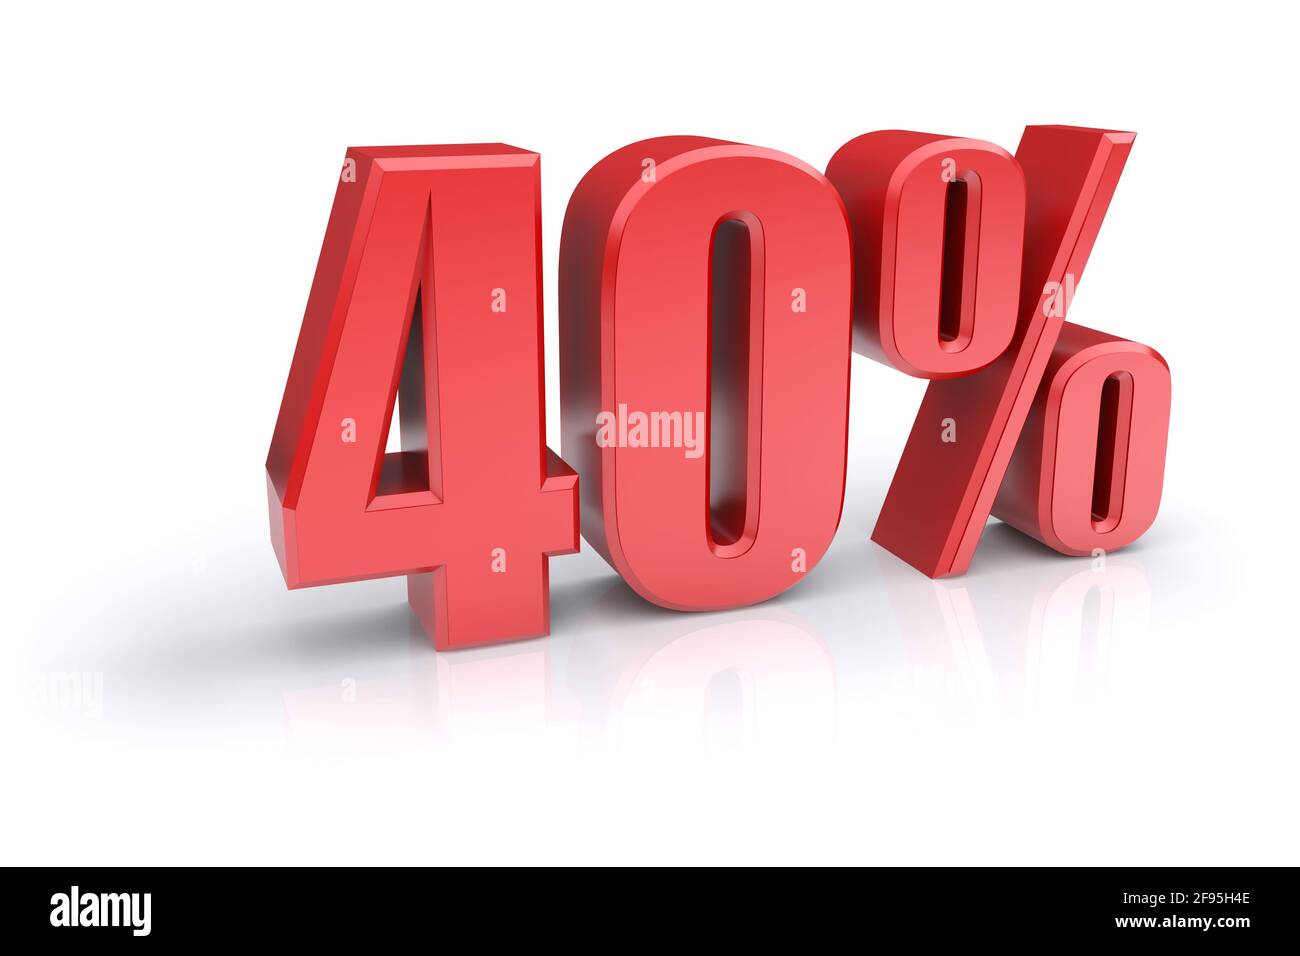 Icona rossa del tasso percentuale del 40% su sfondo bianco. immagine 3d rappresentata Foto Stock